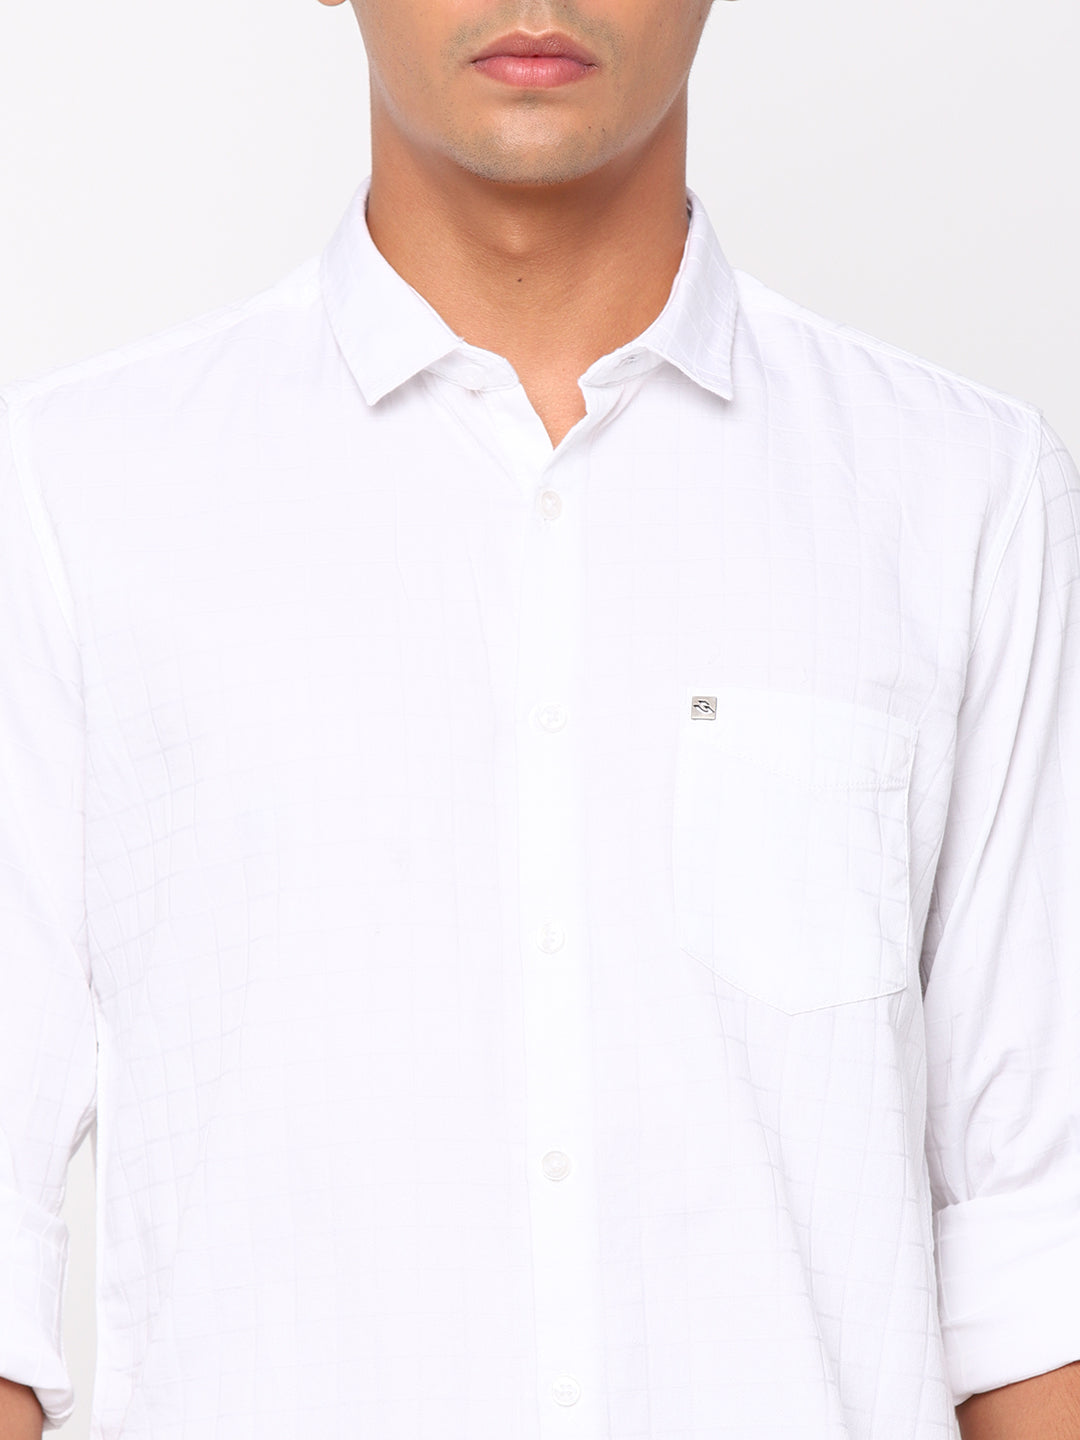 White Checkerd Shirt